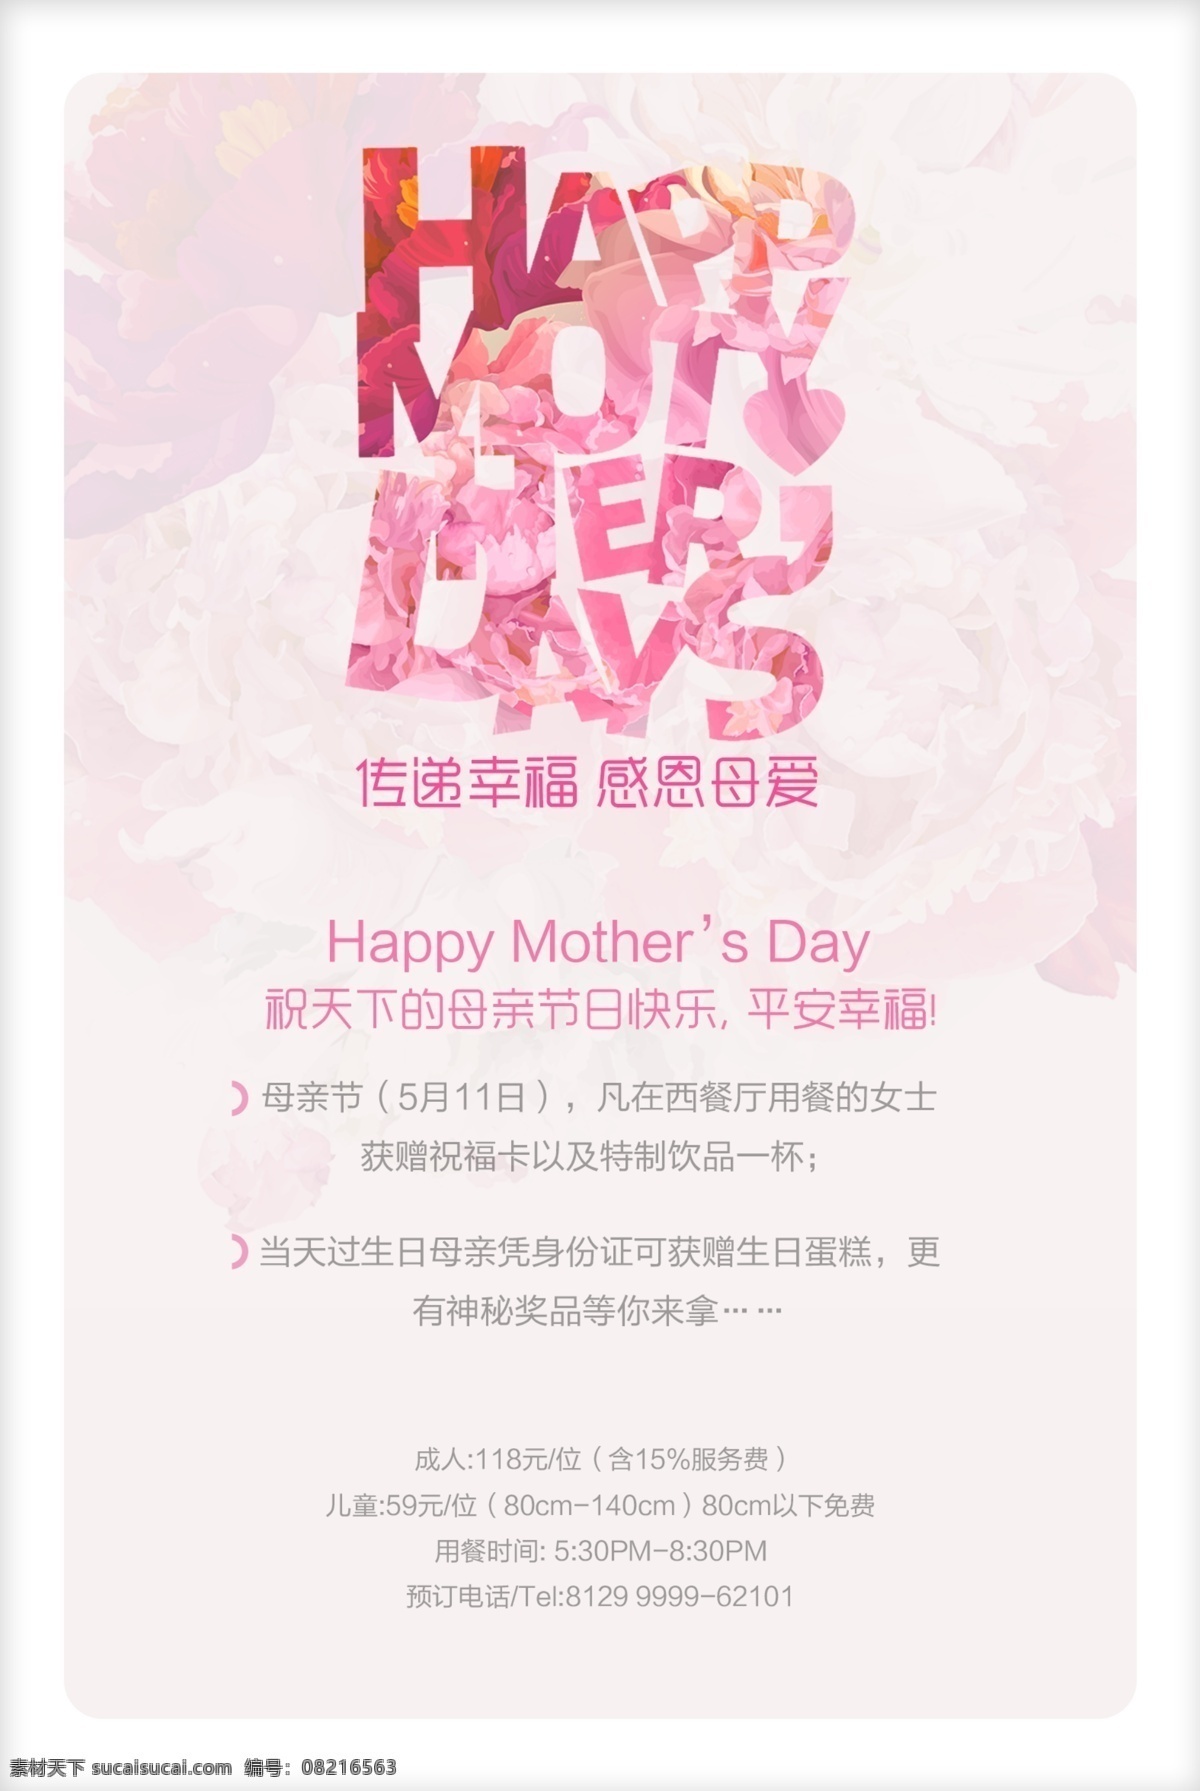 浪漫 粉色 母亲节 背景 简约 小清新 梦幻 海报背景模板 海报模板 化妆品广告